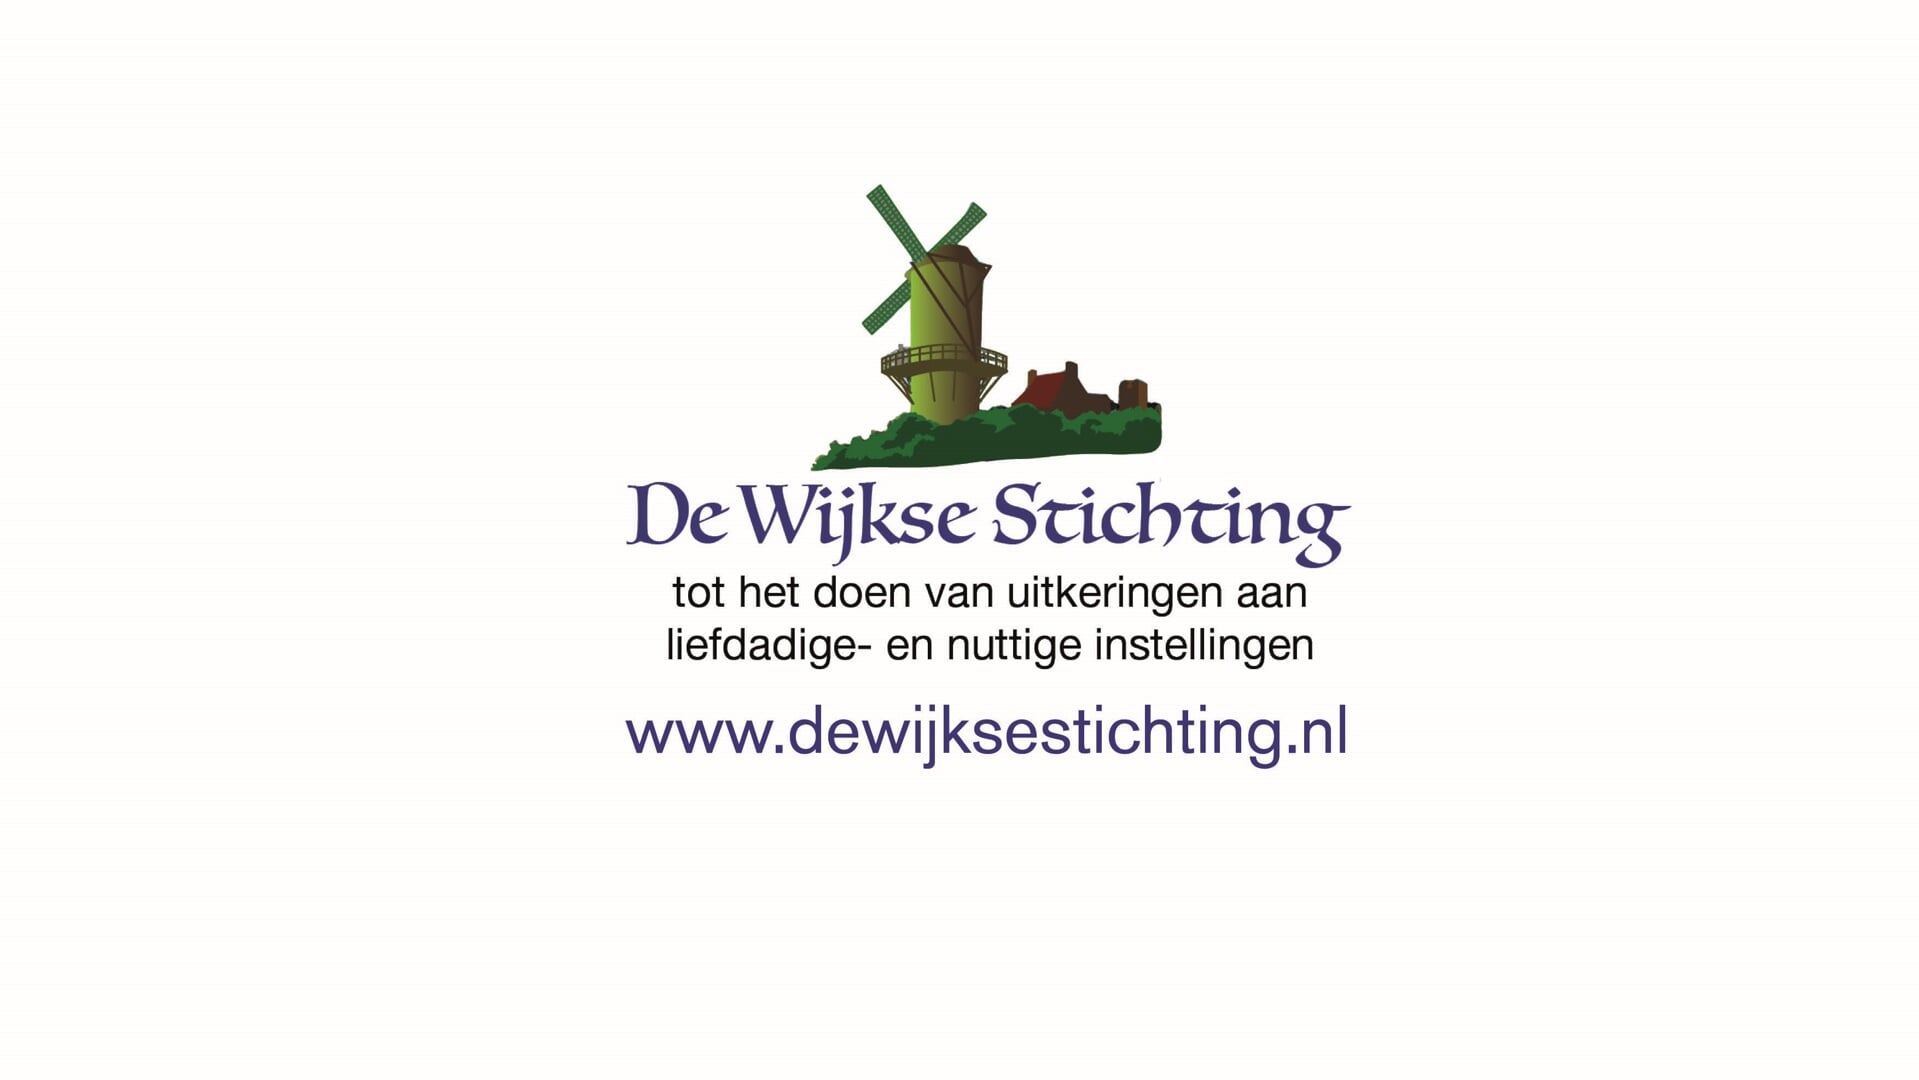 De Wijkse Stichting heeft een nieuwe website